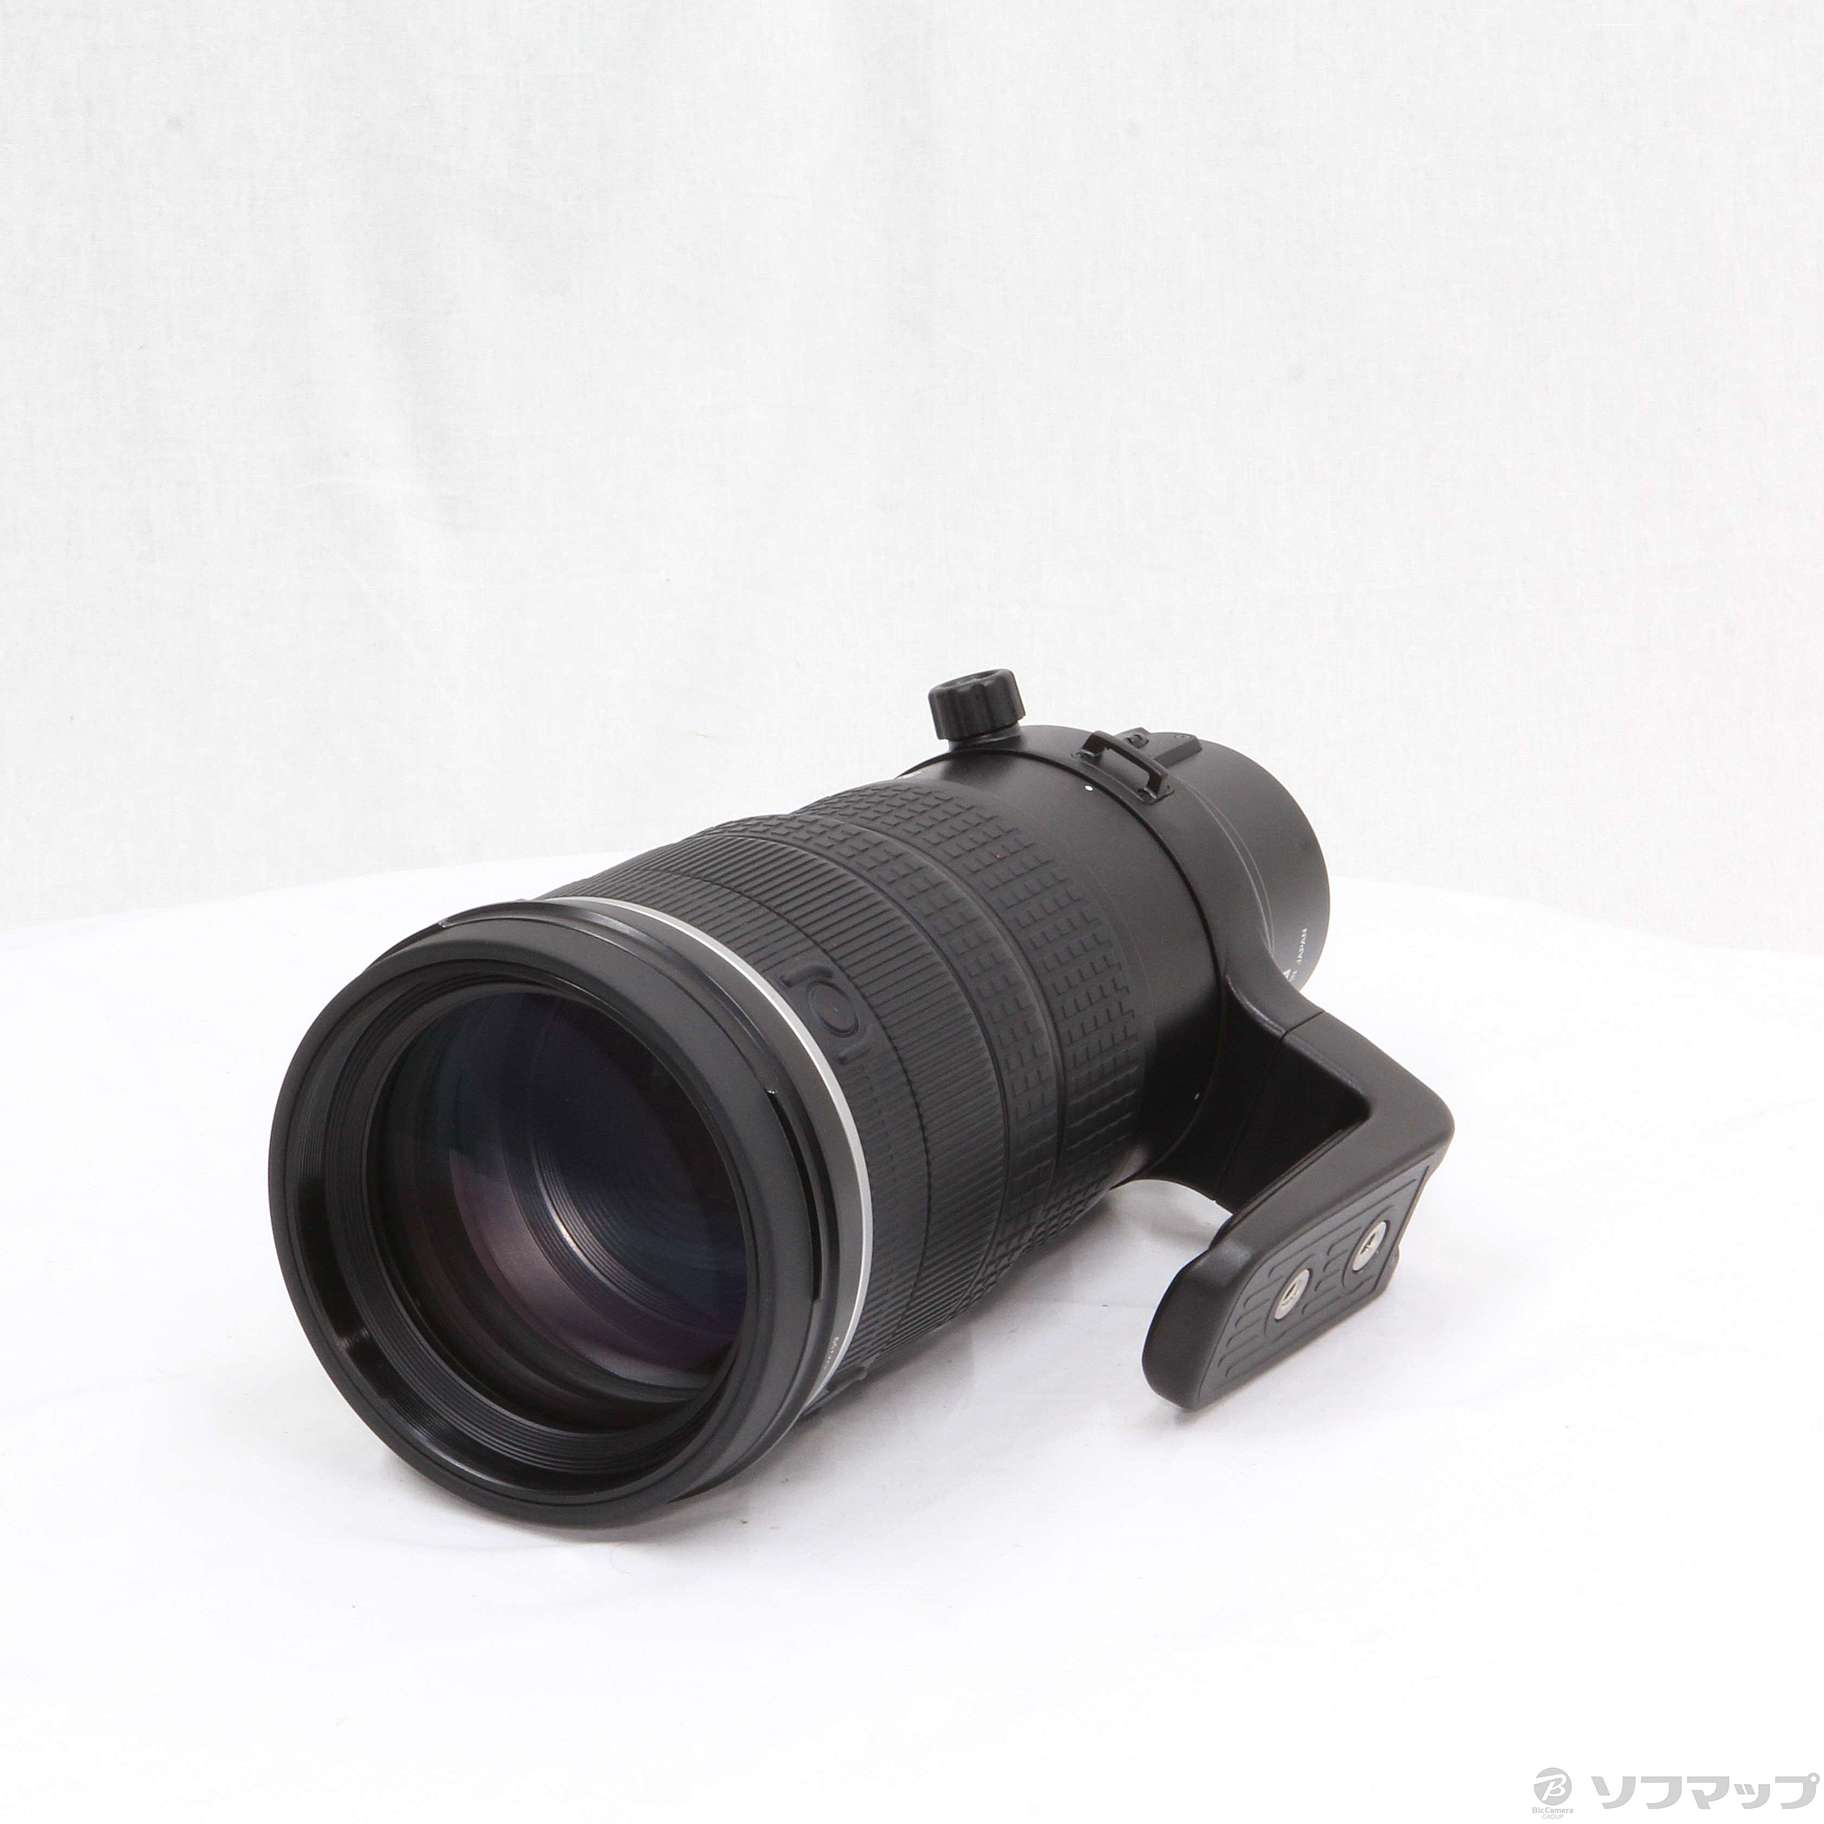 中古】〔展示品〕 ZUIKO DIGITAL ED 90-250mm F2.8 (レンズ